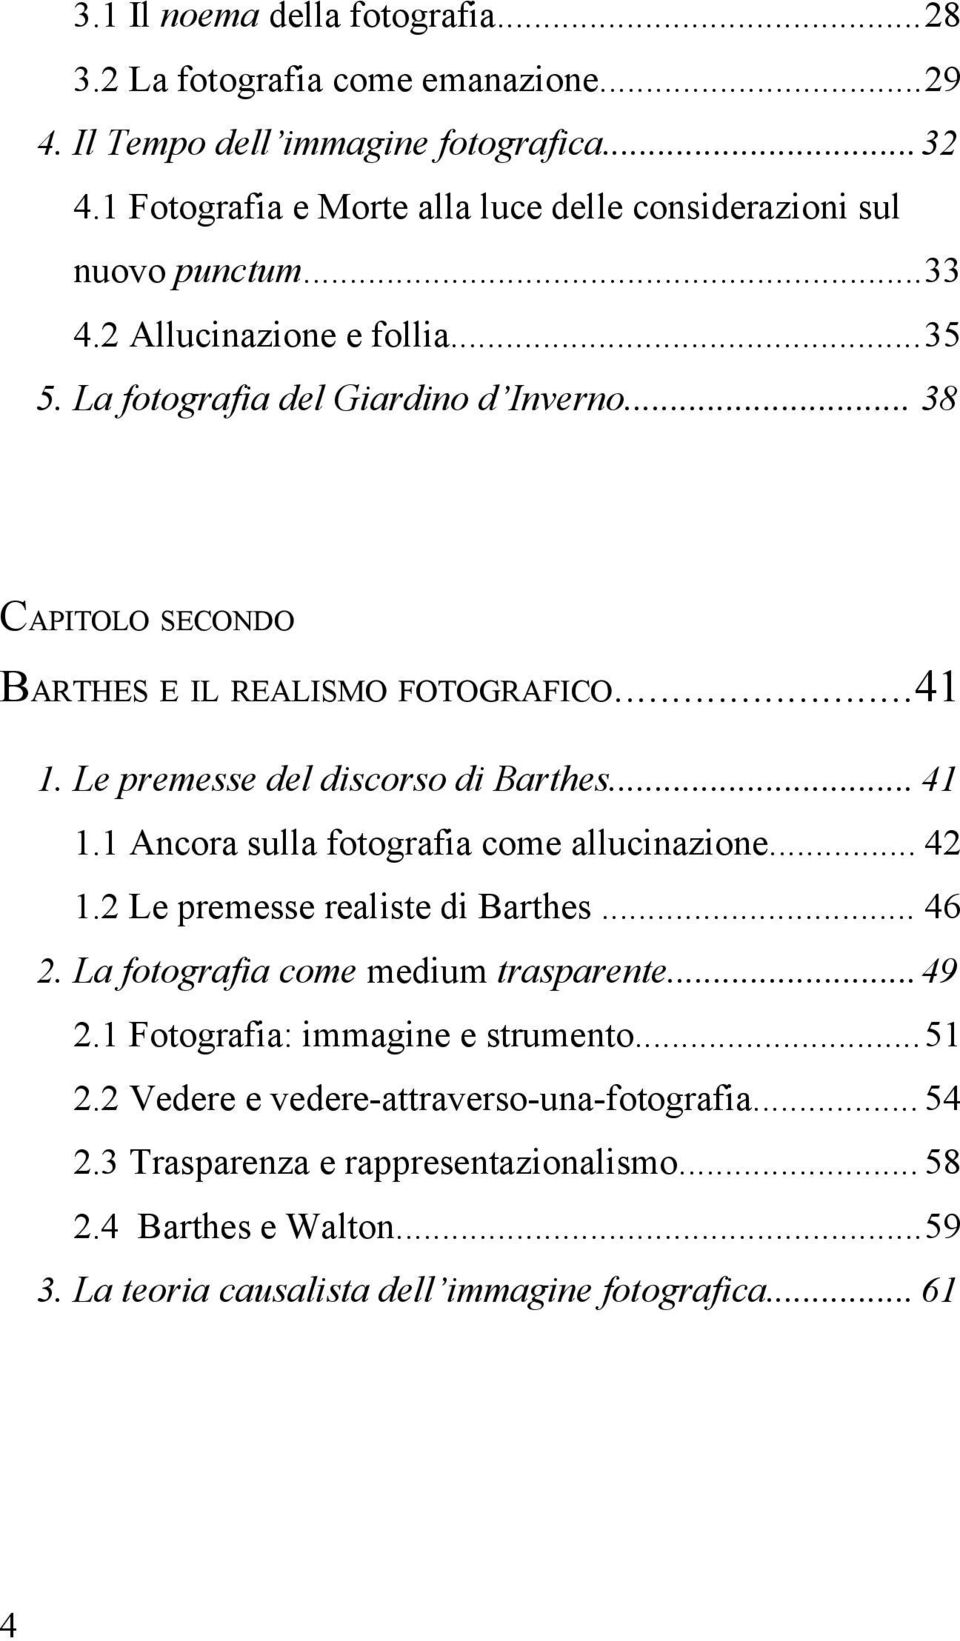 .. 38 CAPITOLO SECONDO BARTHES E IL REALISMO FOTOGRAFICO...41 1. Le premesse del discorso di Barthes... 41 1.1 Ancora sulla fotografia come allucinazione... 42 1.